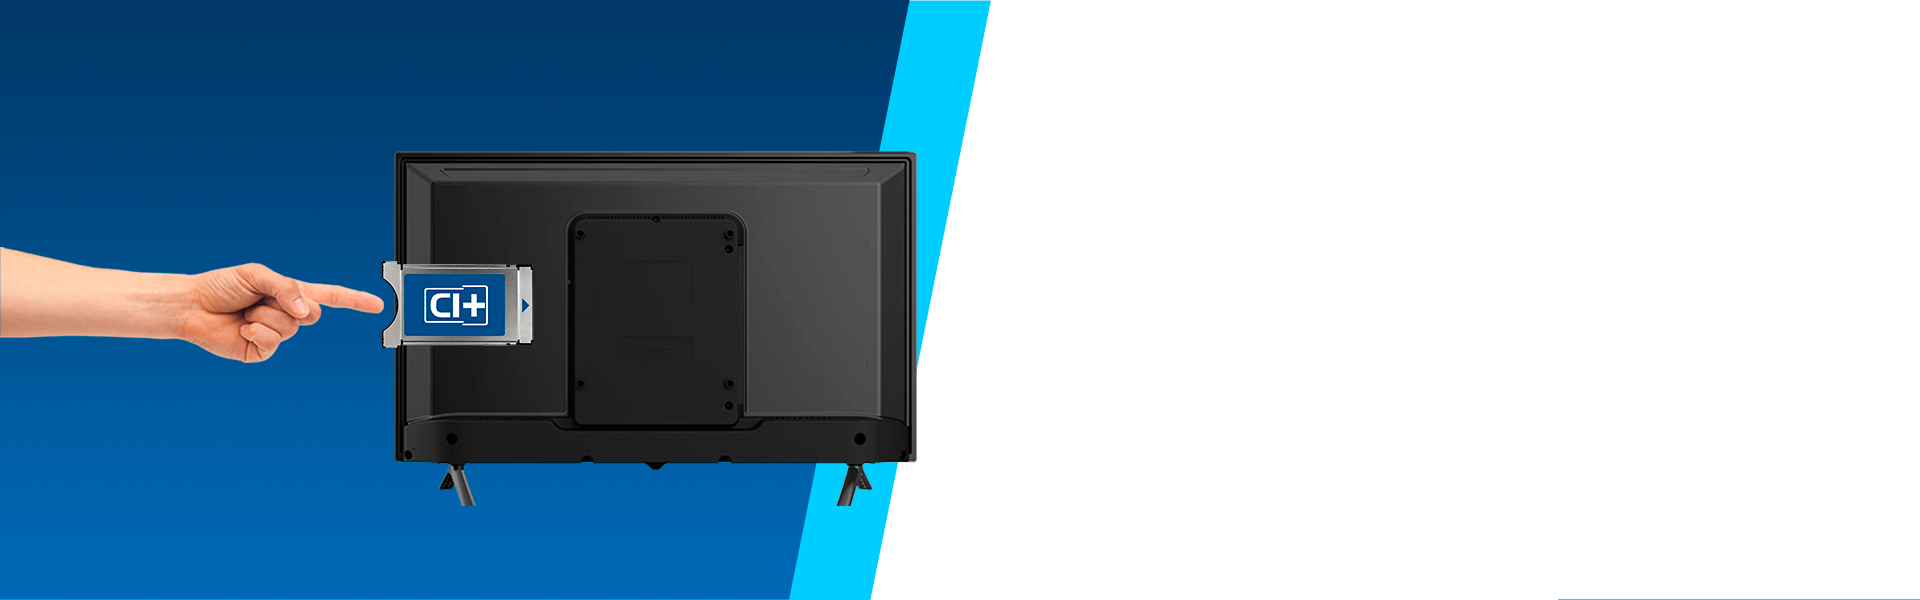 Телевізор UHD 4K Smart TV LED Blaupunkt 65UN265